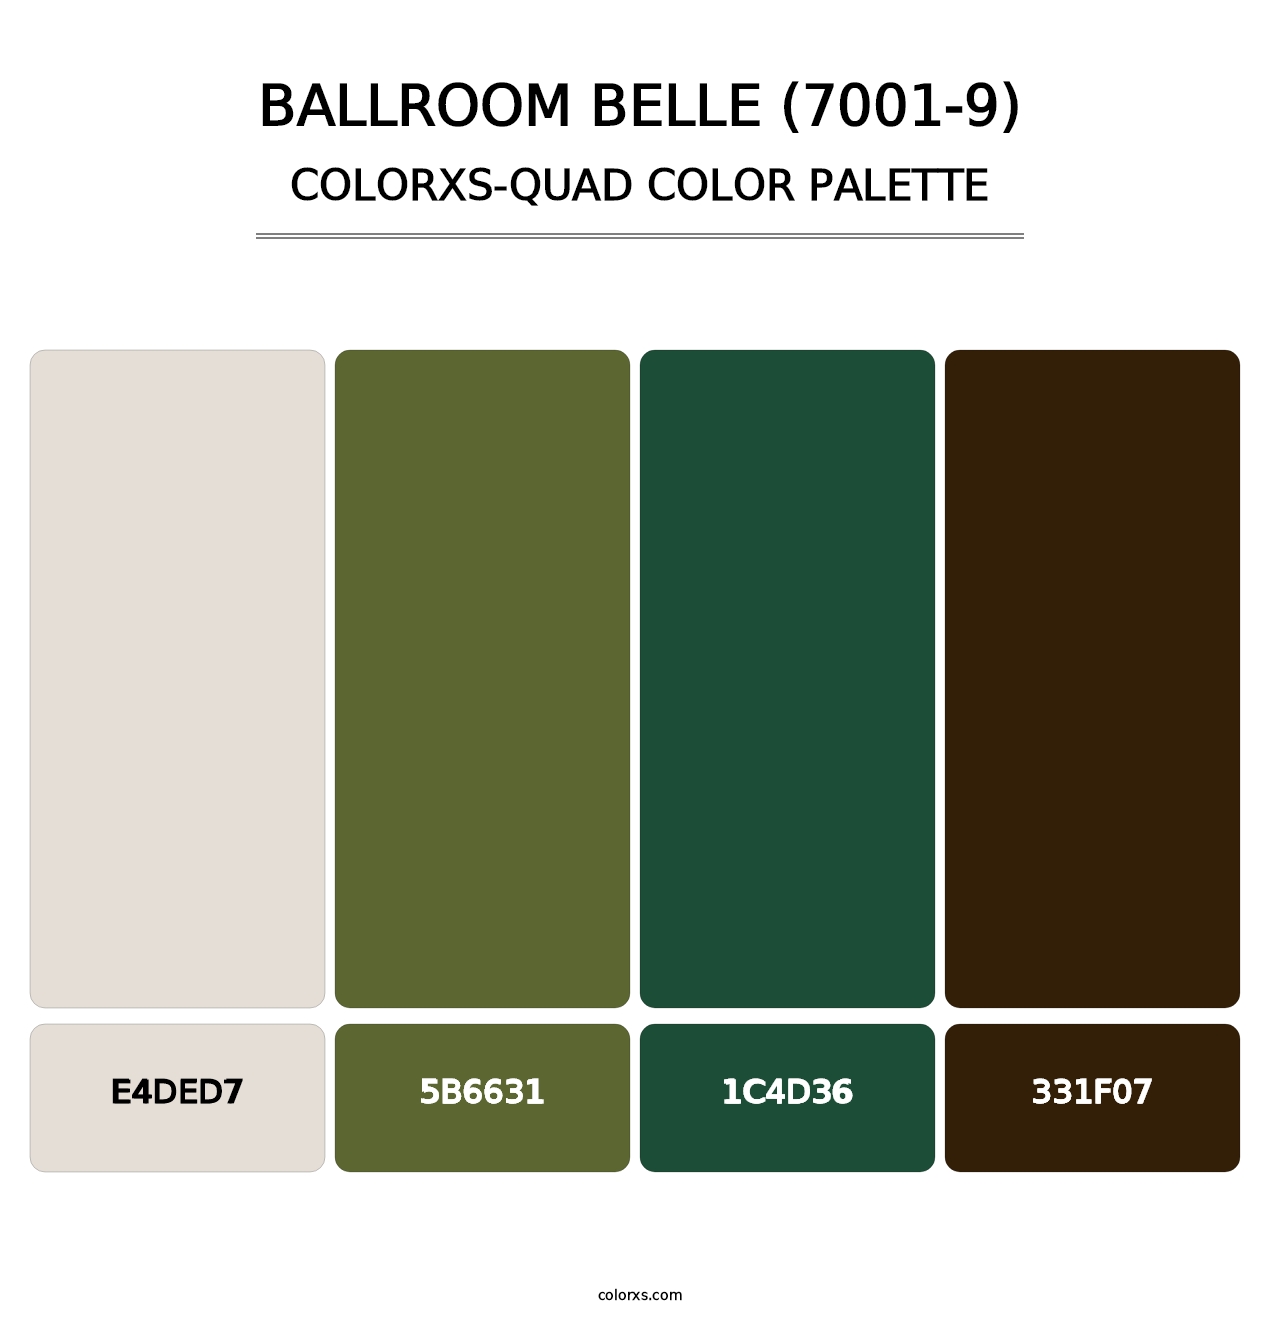 Ballroom Belle (7001-9) - Colorxs Quad Palette